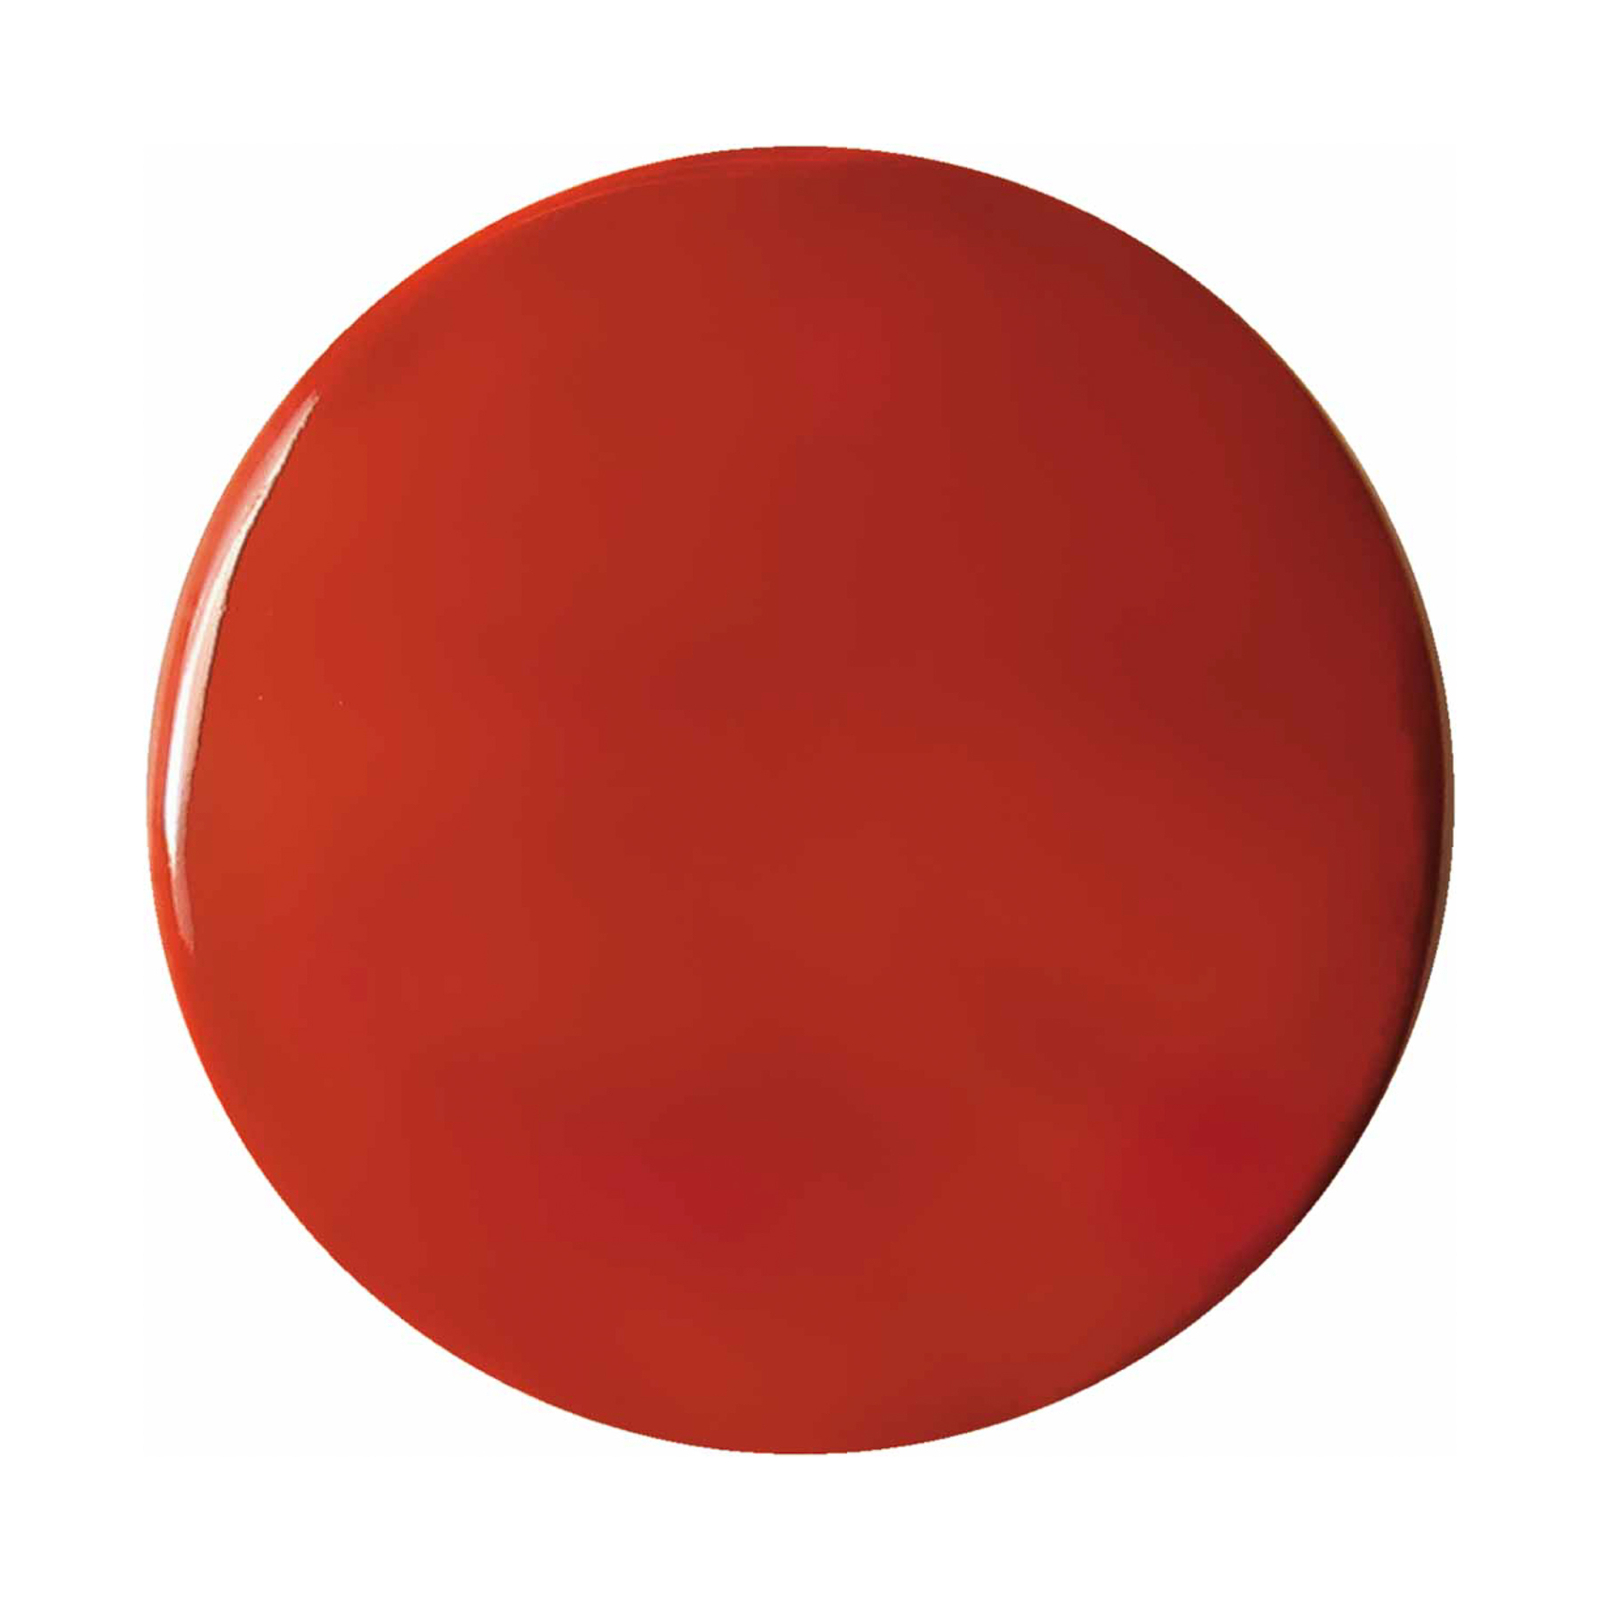 Sospensione Ayrton, ceramica, lunga 29 cm, rosso